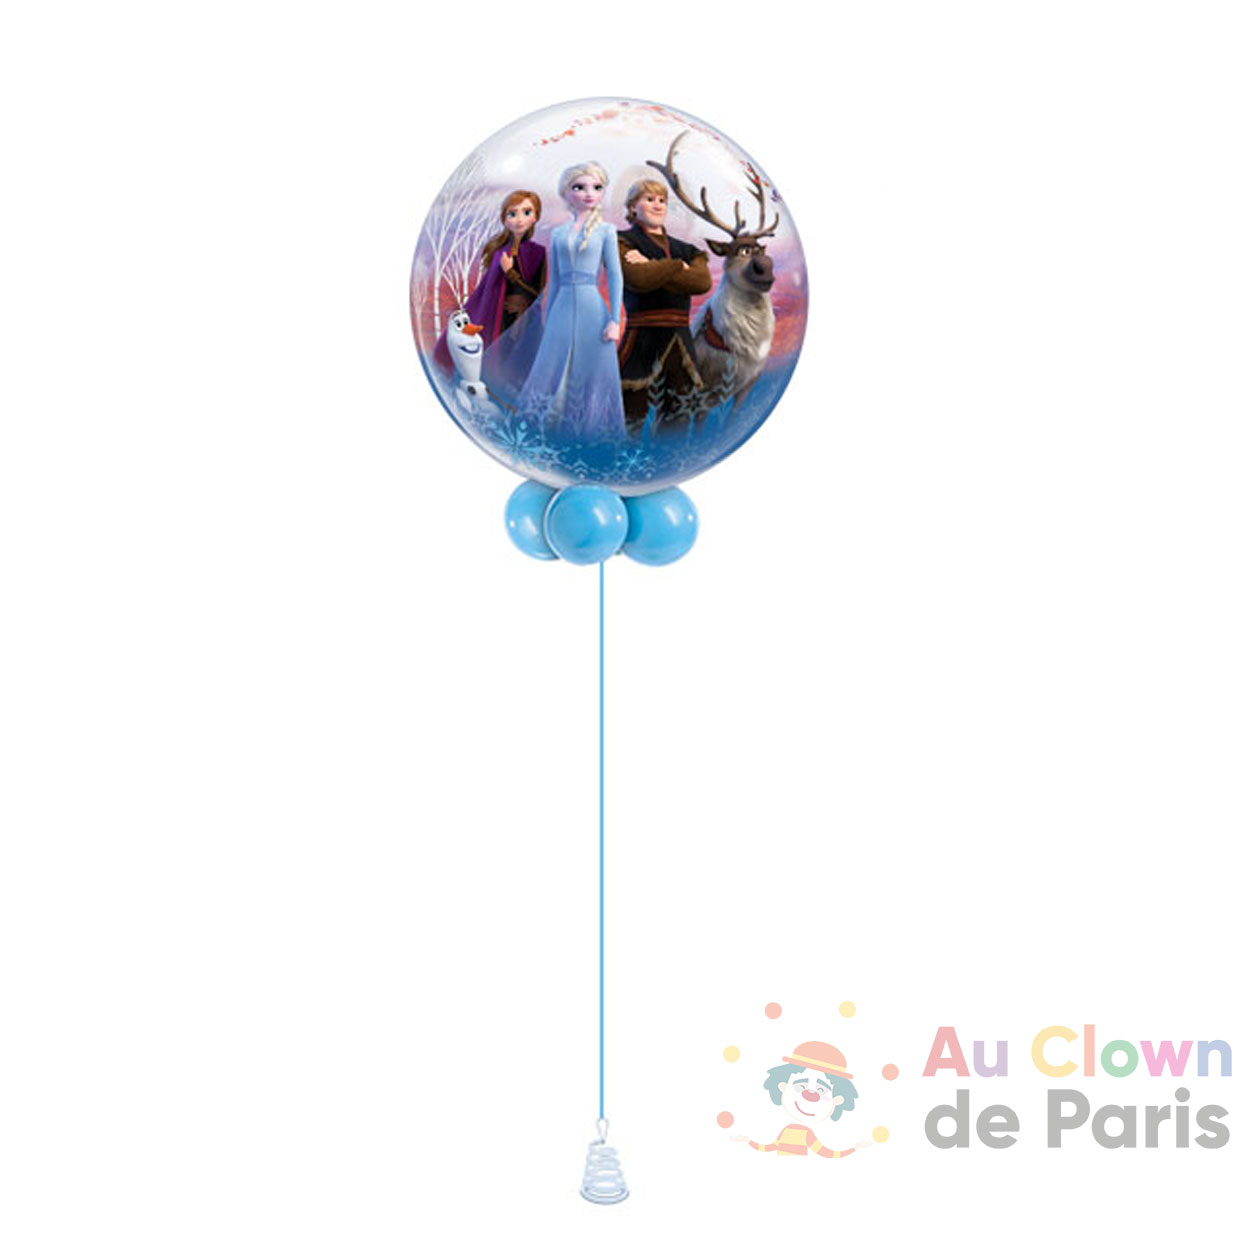 https://au-clown-de-paris.fr/wp-content/uploads/2021/01/ballon-helium-reine-des-neiges.jpg